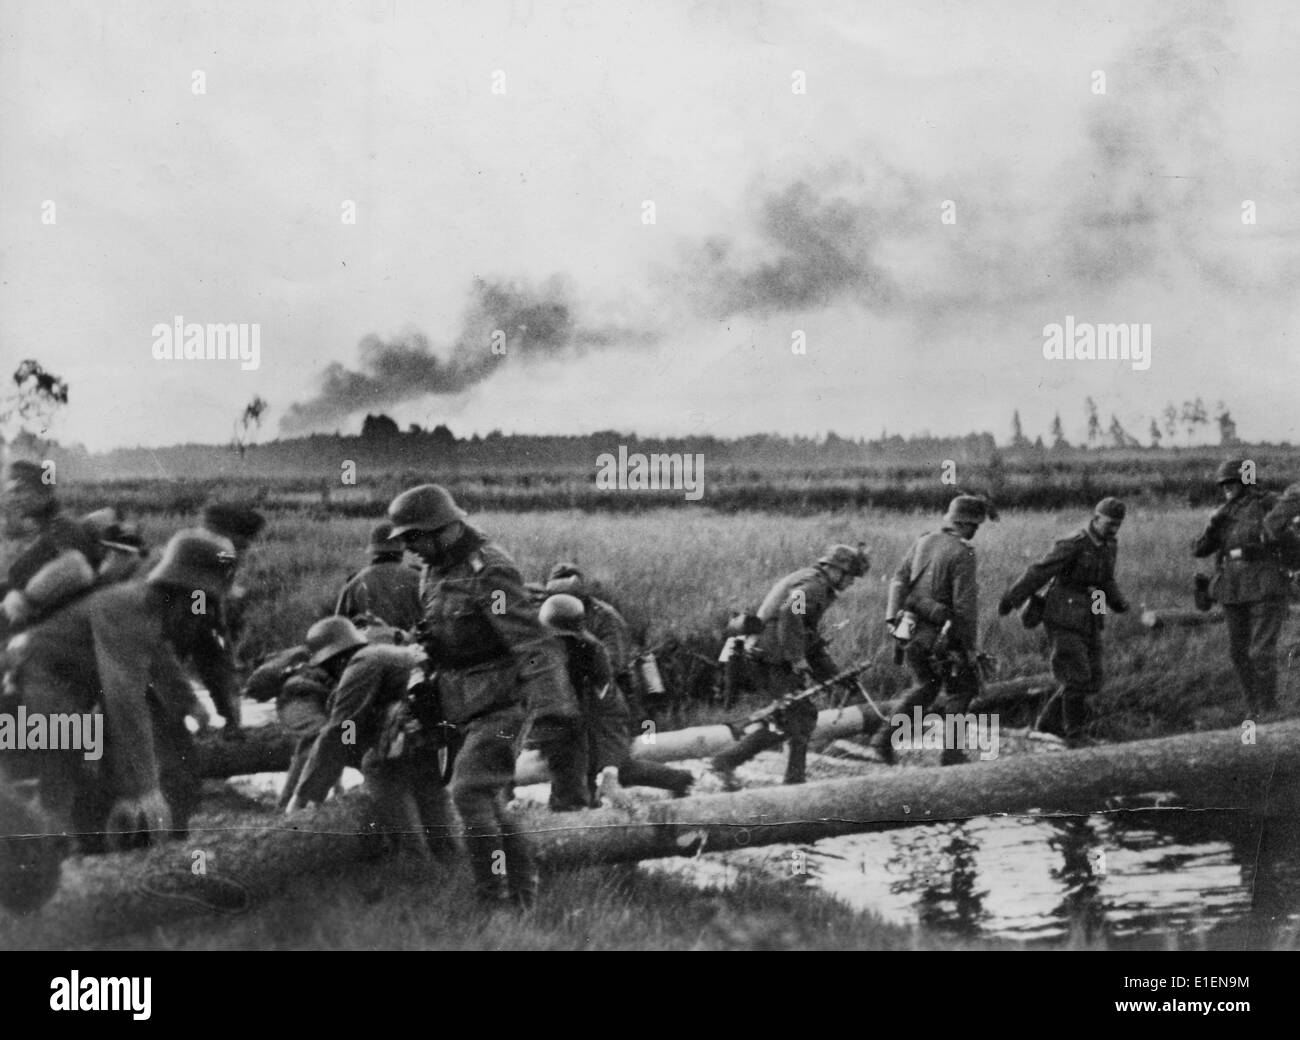 22 июня мост. Войска вермахта пересекают границу СССР. 22 Июня 1941 река Буг. Немецкие солдаты 22 июня 1941.